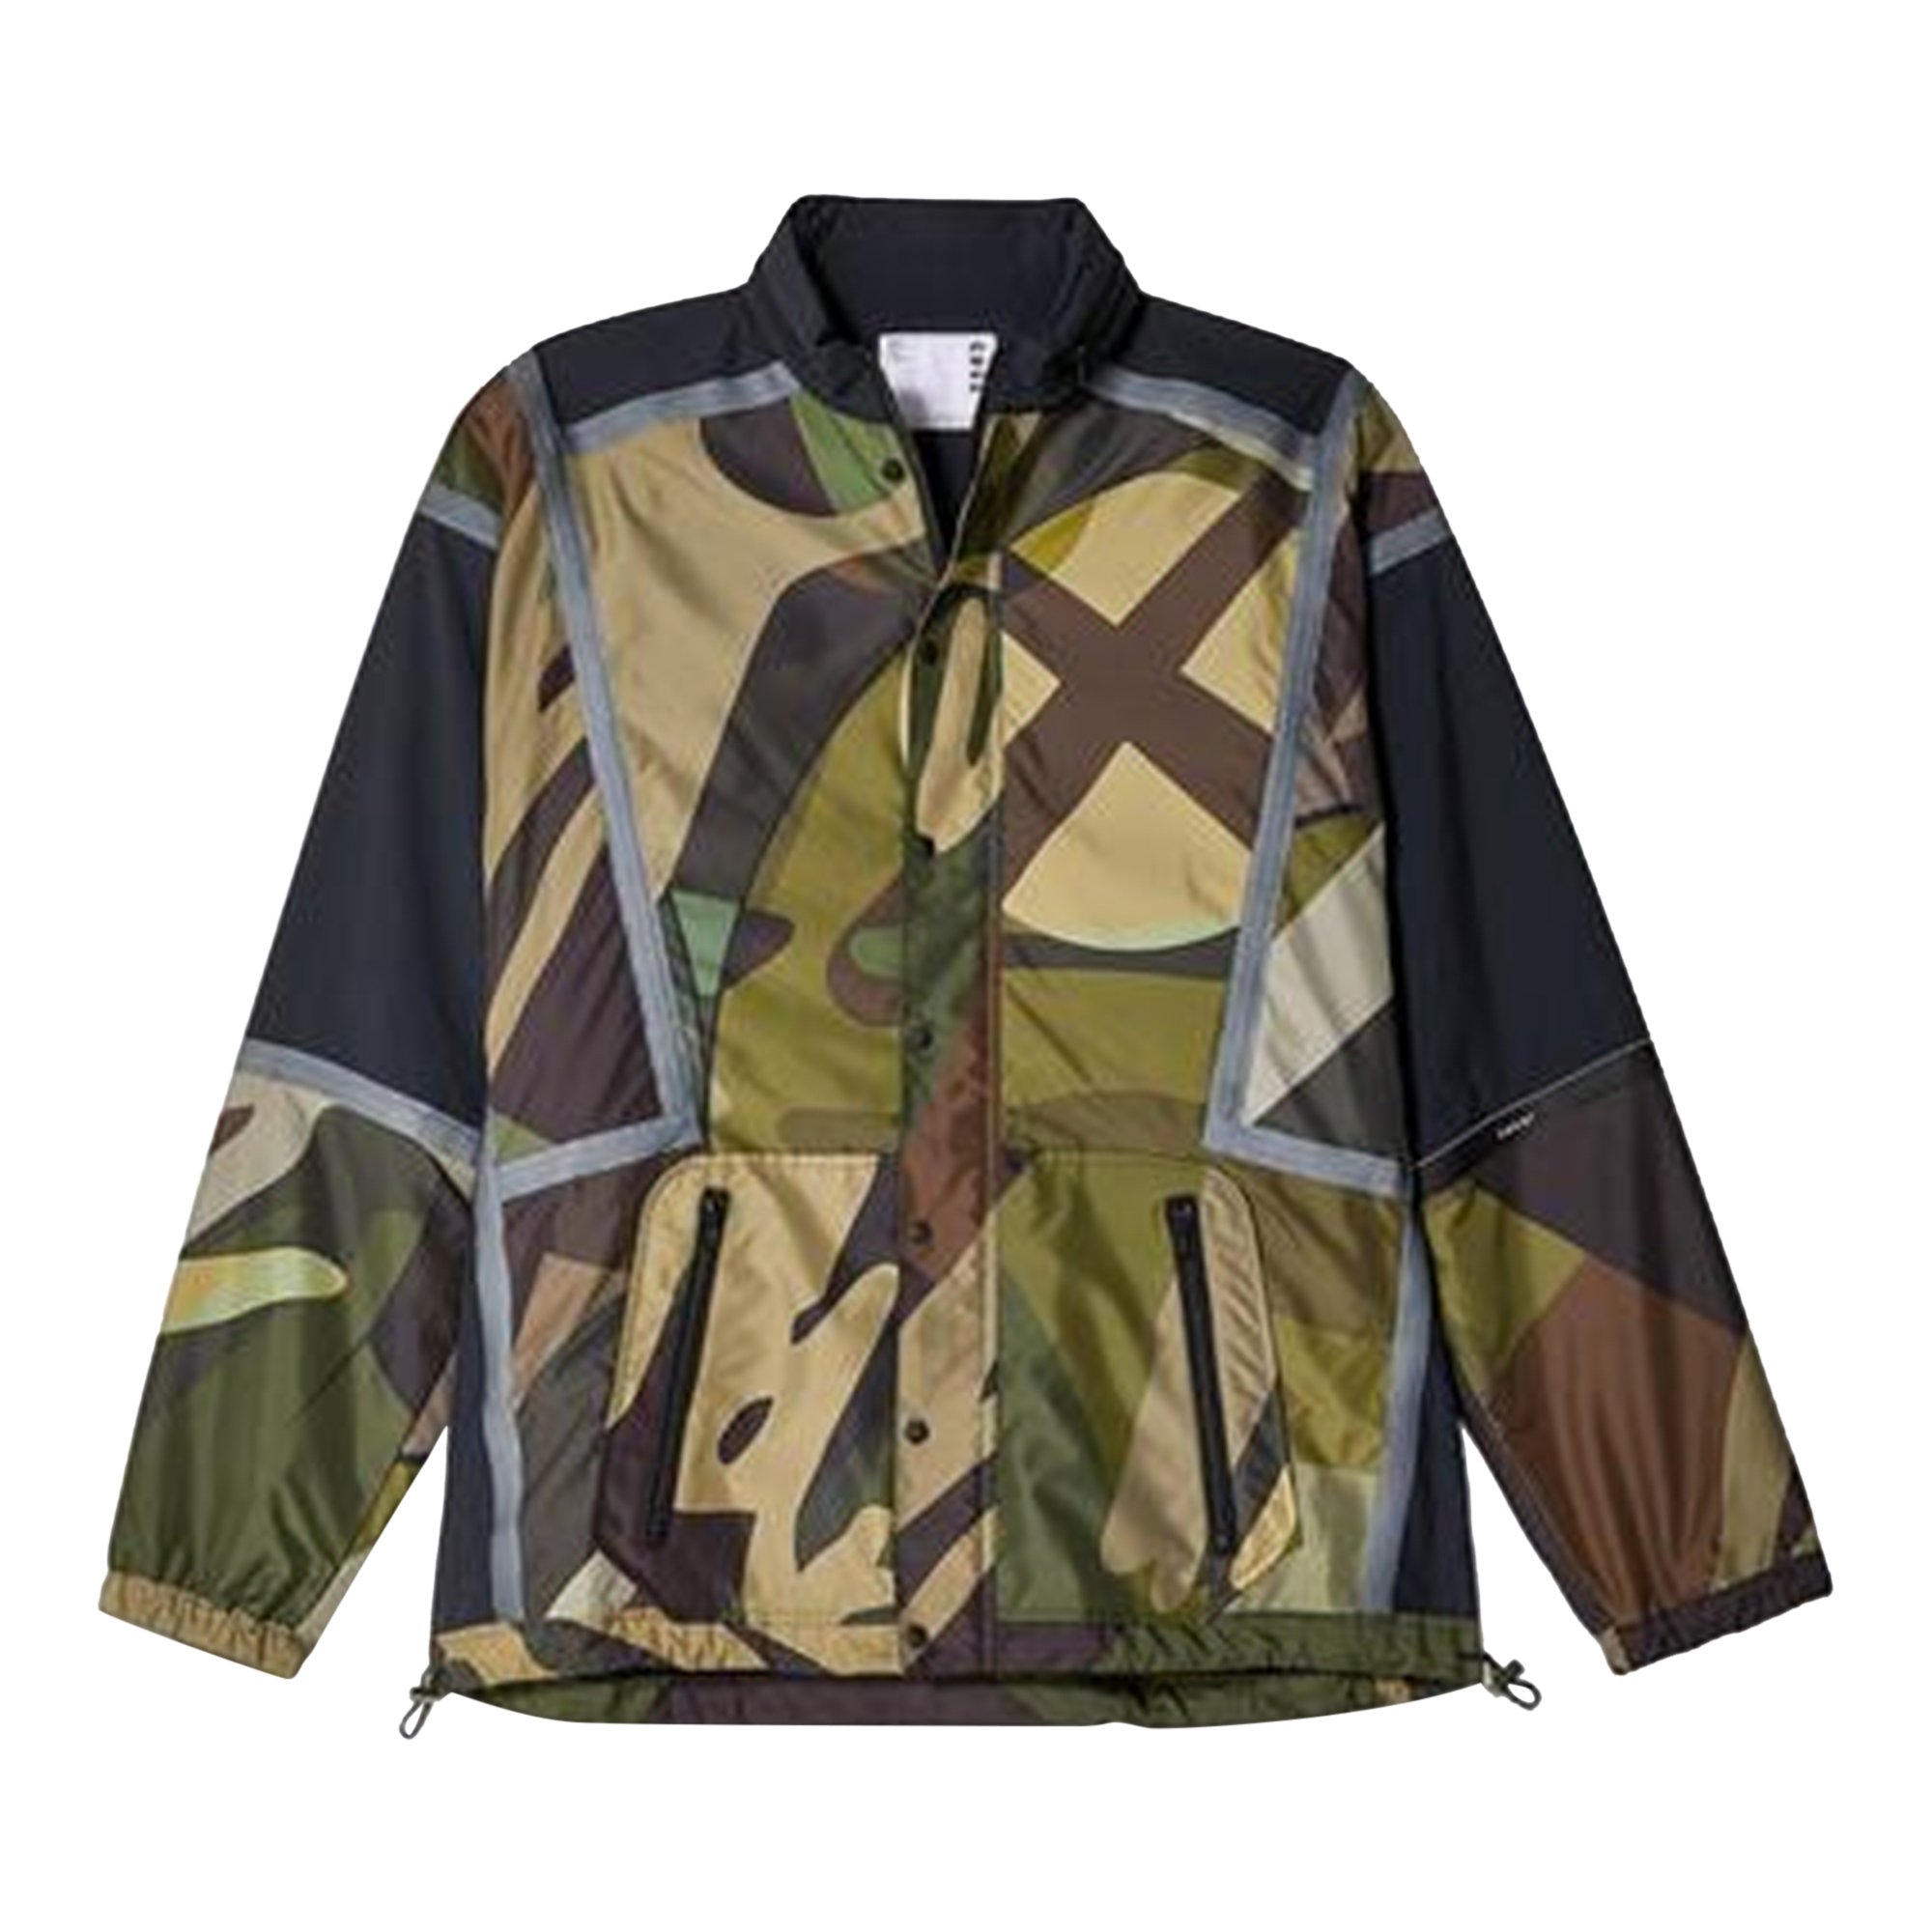 Buy Sacai x KAWS Print Blouson 'Camouflage' - 2102563 M 9361 | GOAT